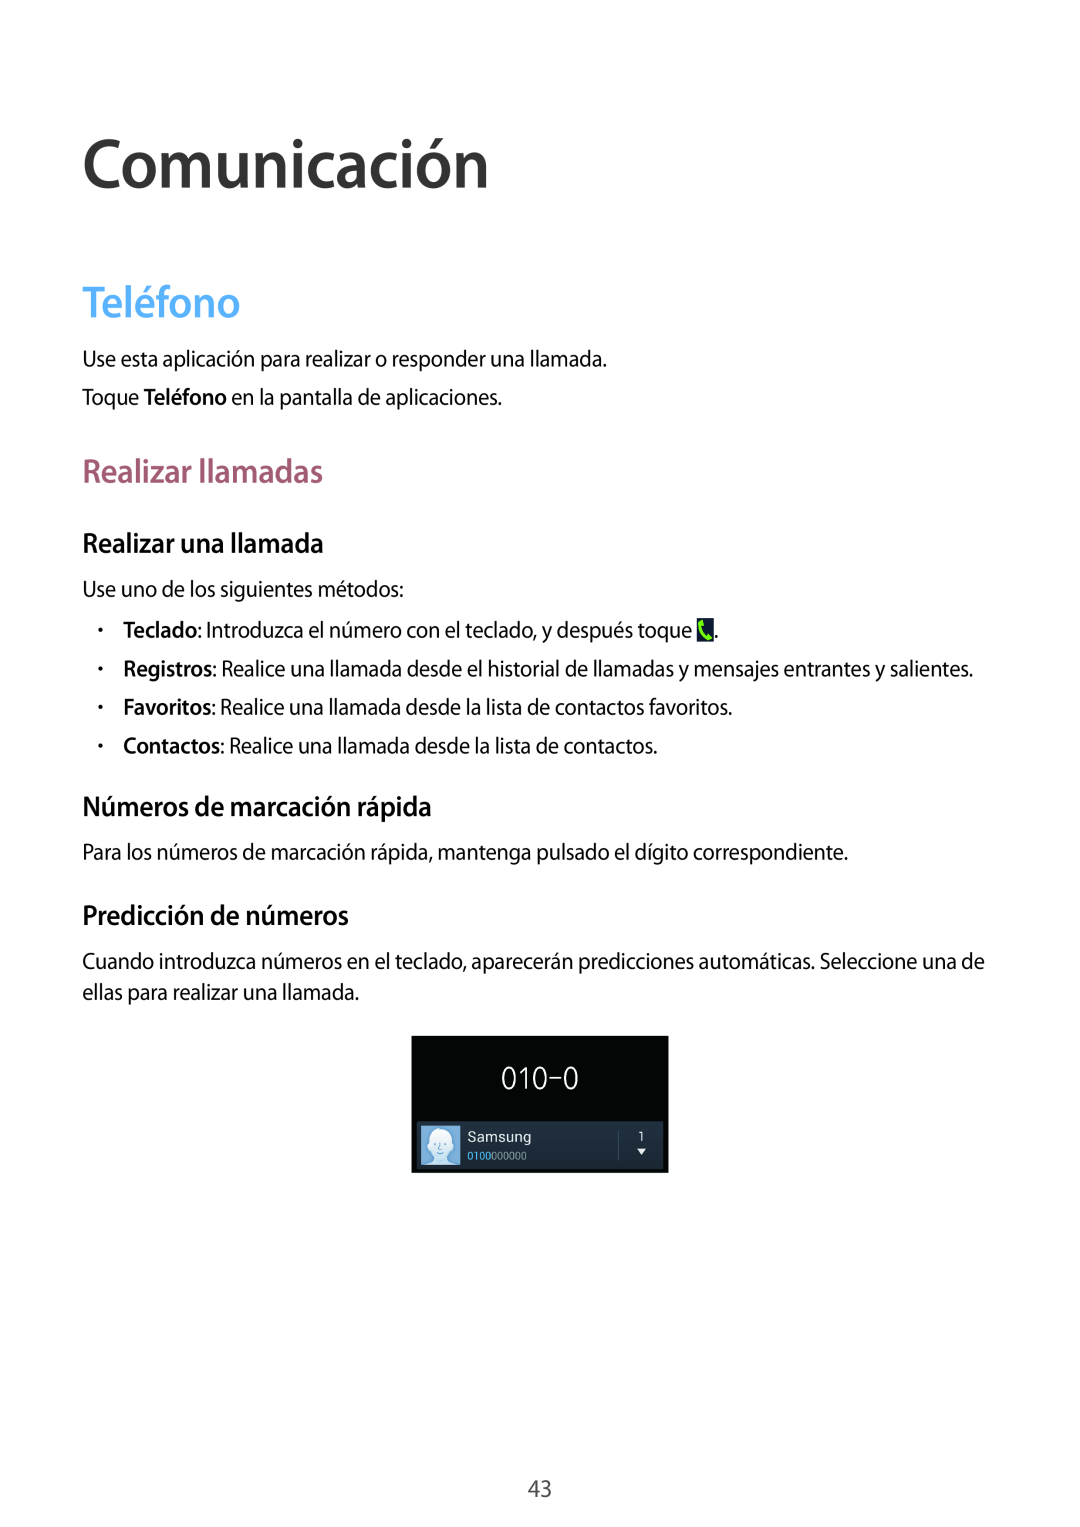 Samsung GT-I9195ZKAYOG manual Comunicación, Teléfono, Realizar llamadas, Realizar una llamada, Números de marcación rápida 